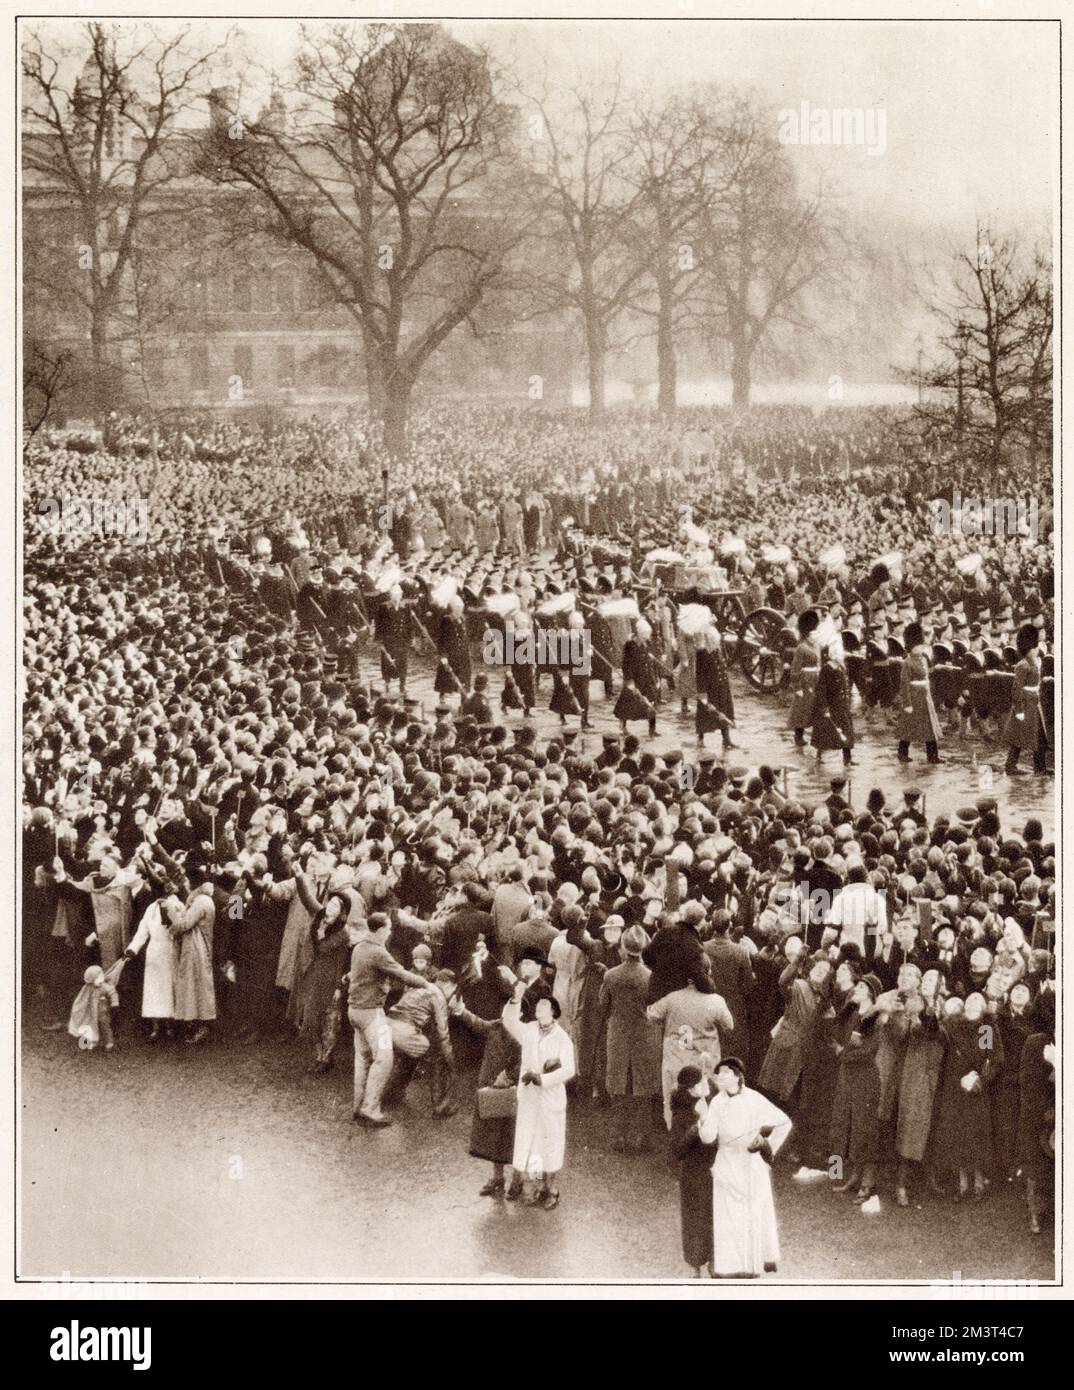 Les gens à l'arrière de la foule qui bordent la route de la procession funéraire du roi George V en utilisant une variété de périmètres et de miroirs pour être en mesure de voir que le cortège passait par les marches du duc de York et a fait le chemin de la galerie marchande. Voir la photo numéro 13784571 pour une scène semblable montrée pour les funérailles du roi Édouard VII en 1910. Banque D'Images